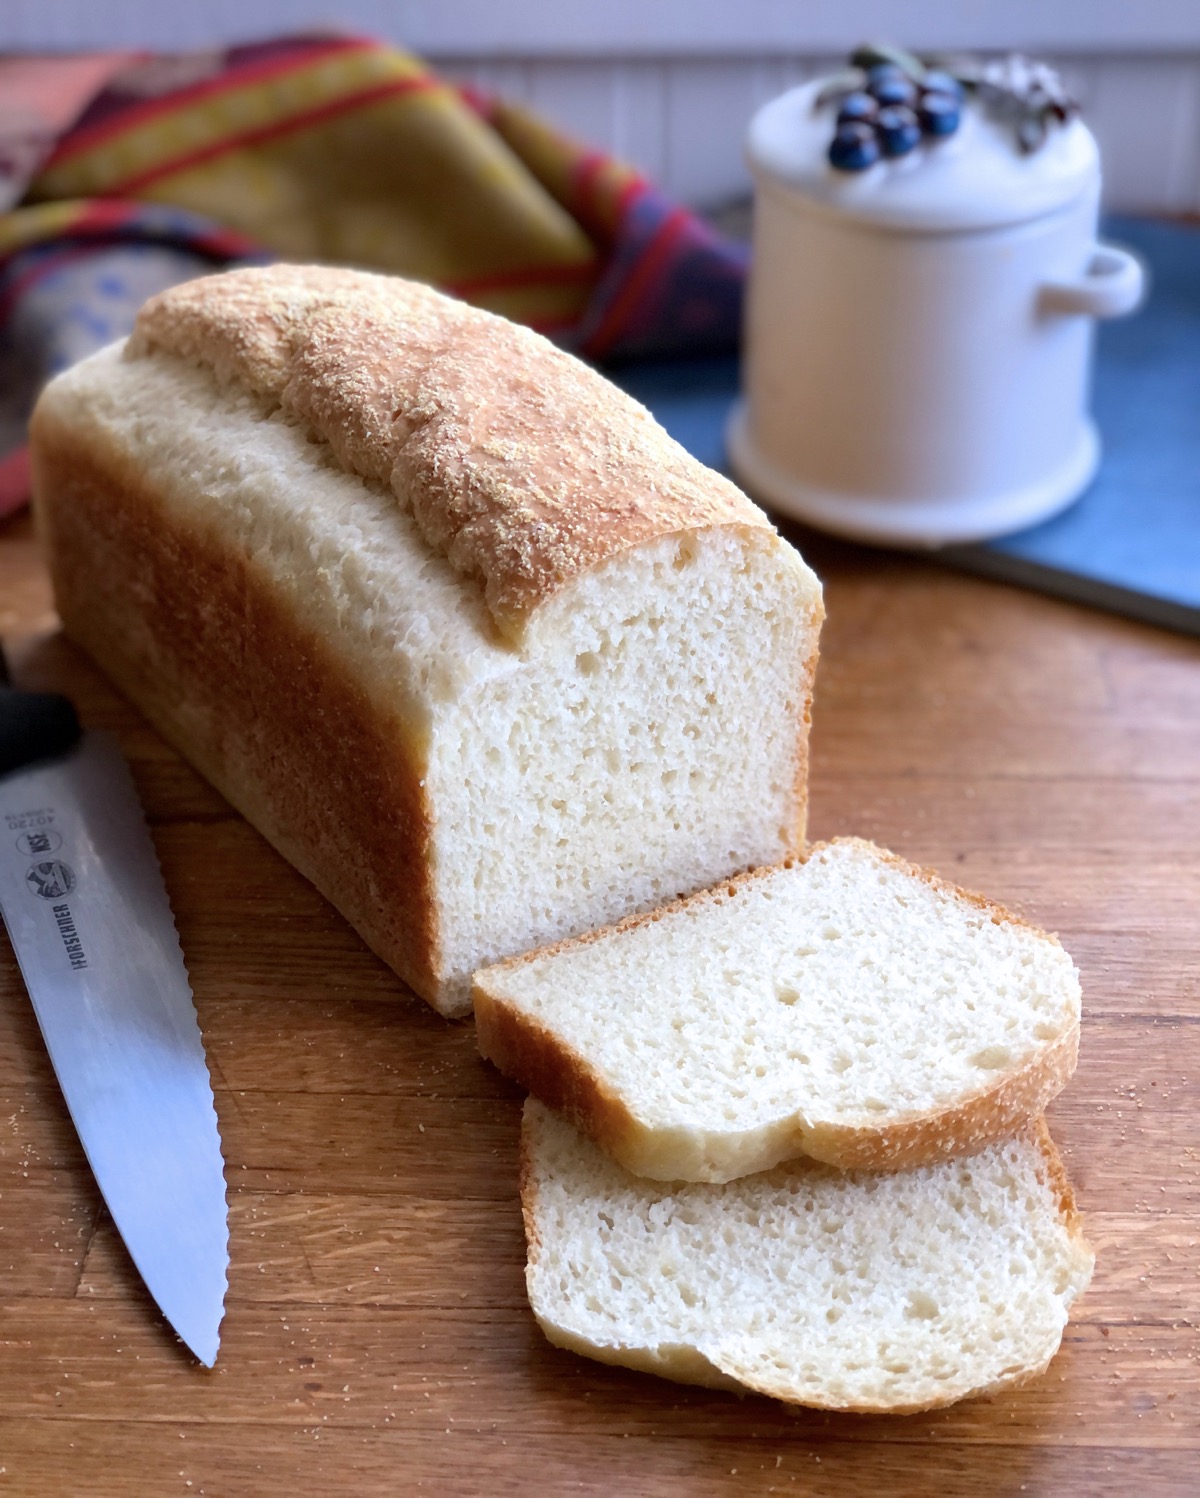 Loaf of sourdough bread, several slices cut, knife on side and jam jar behind.